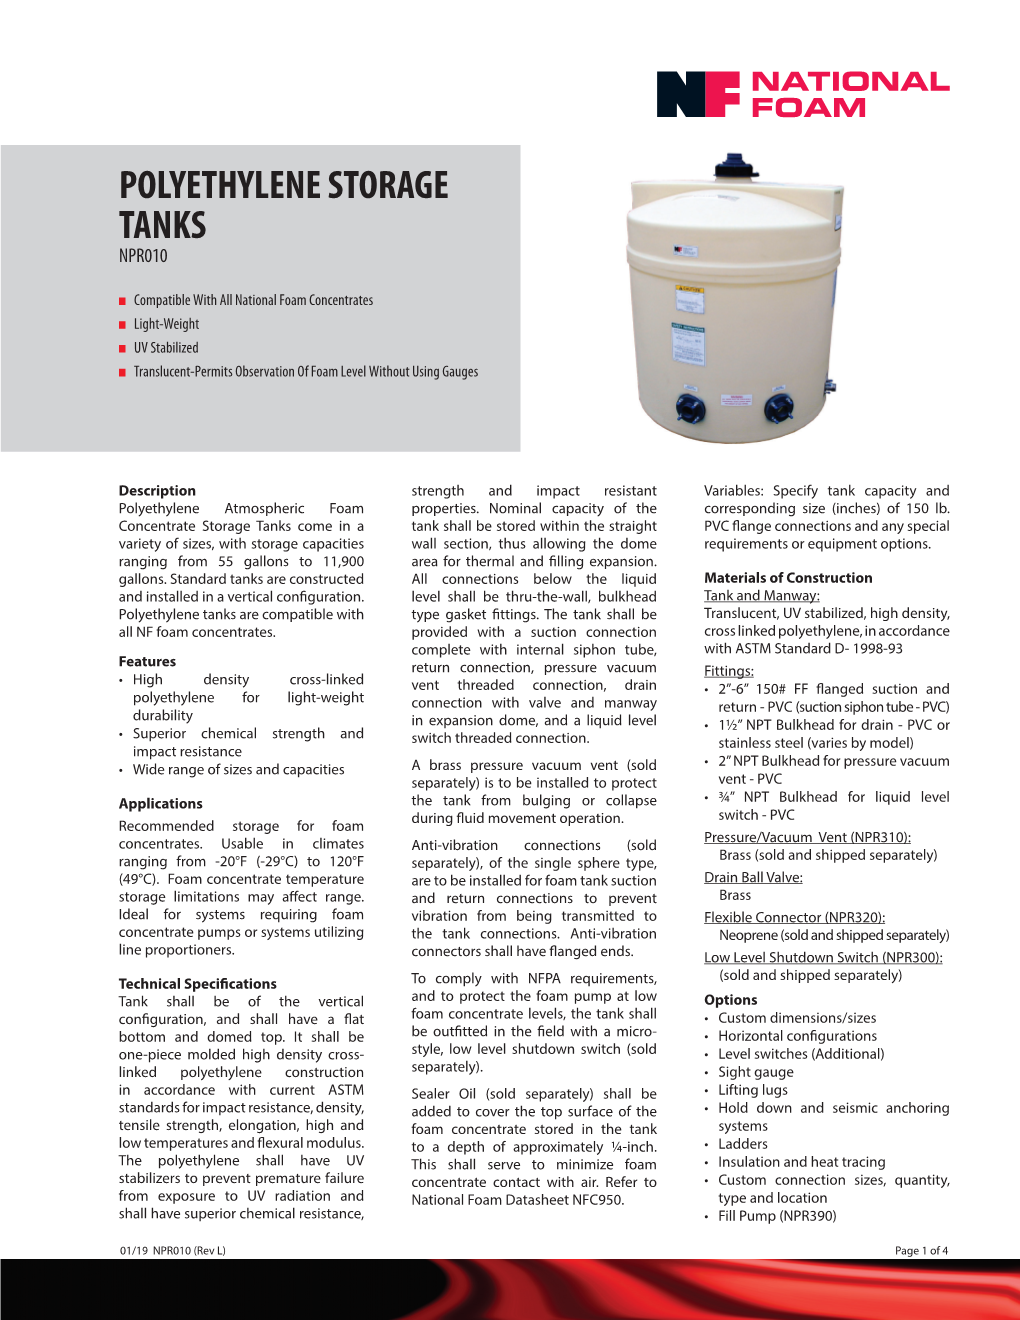 NPR010-Polyethylene Storage Tanks (Rev L).Indd